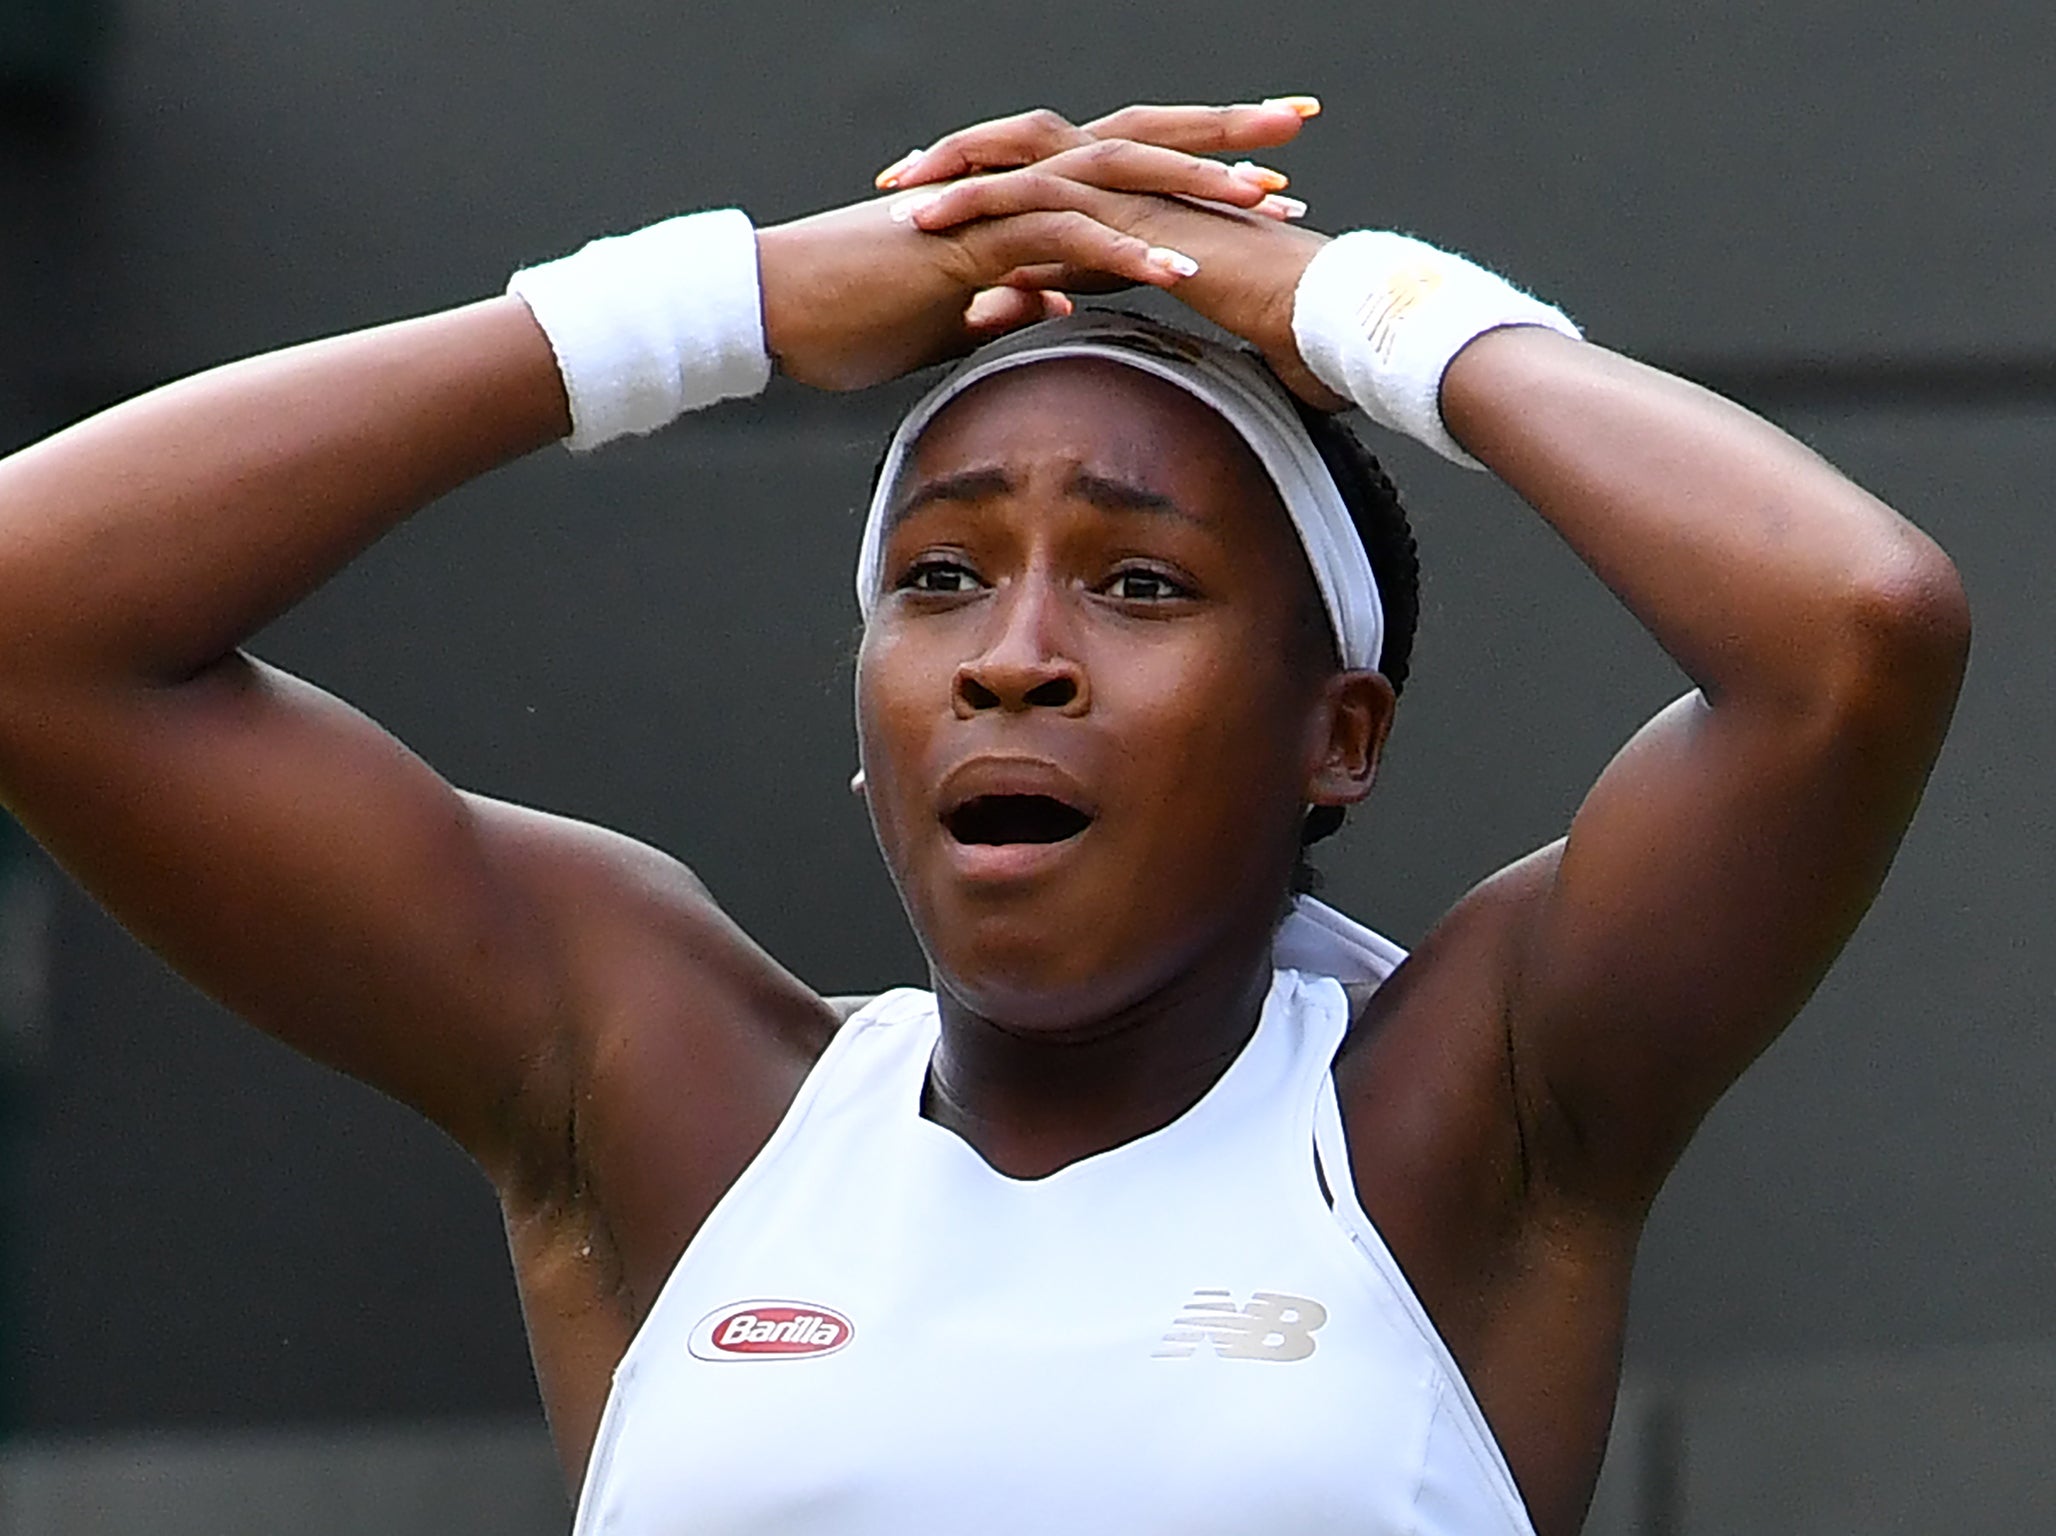 Wimbledon 2019 LIVE 15-year-old Cori Gauff stuns Venus Williams, Naomi Osaka out The Independent The Independent